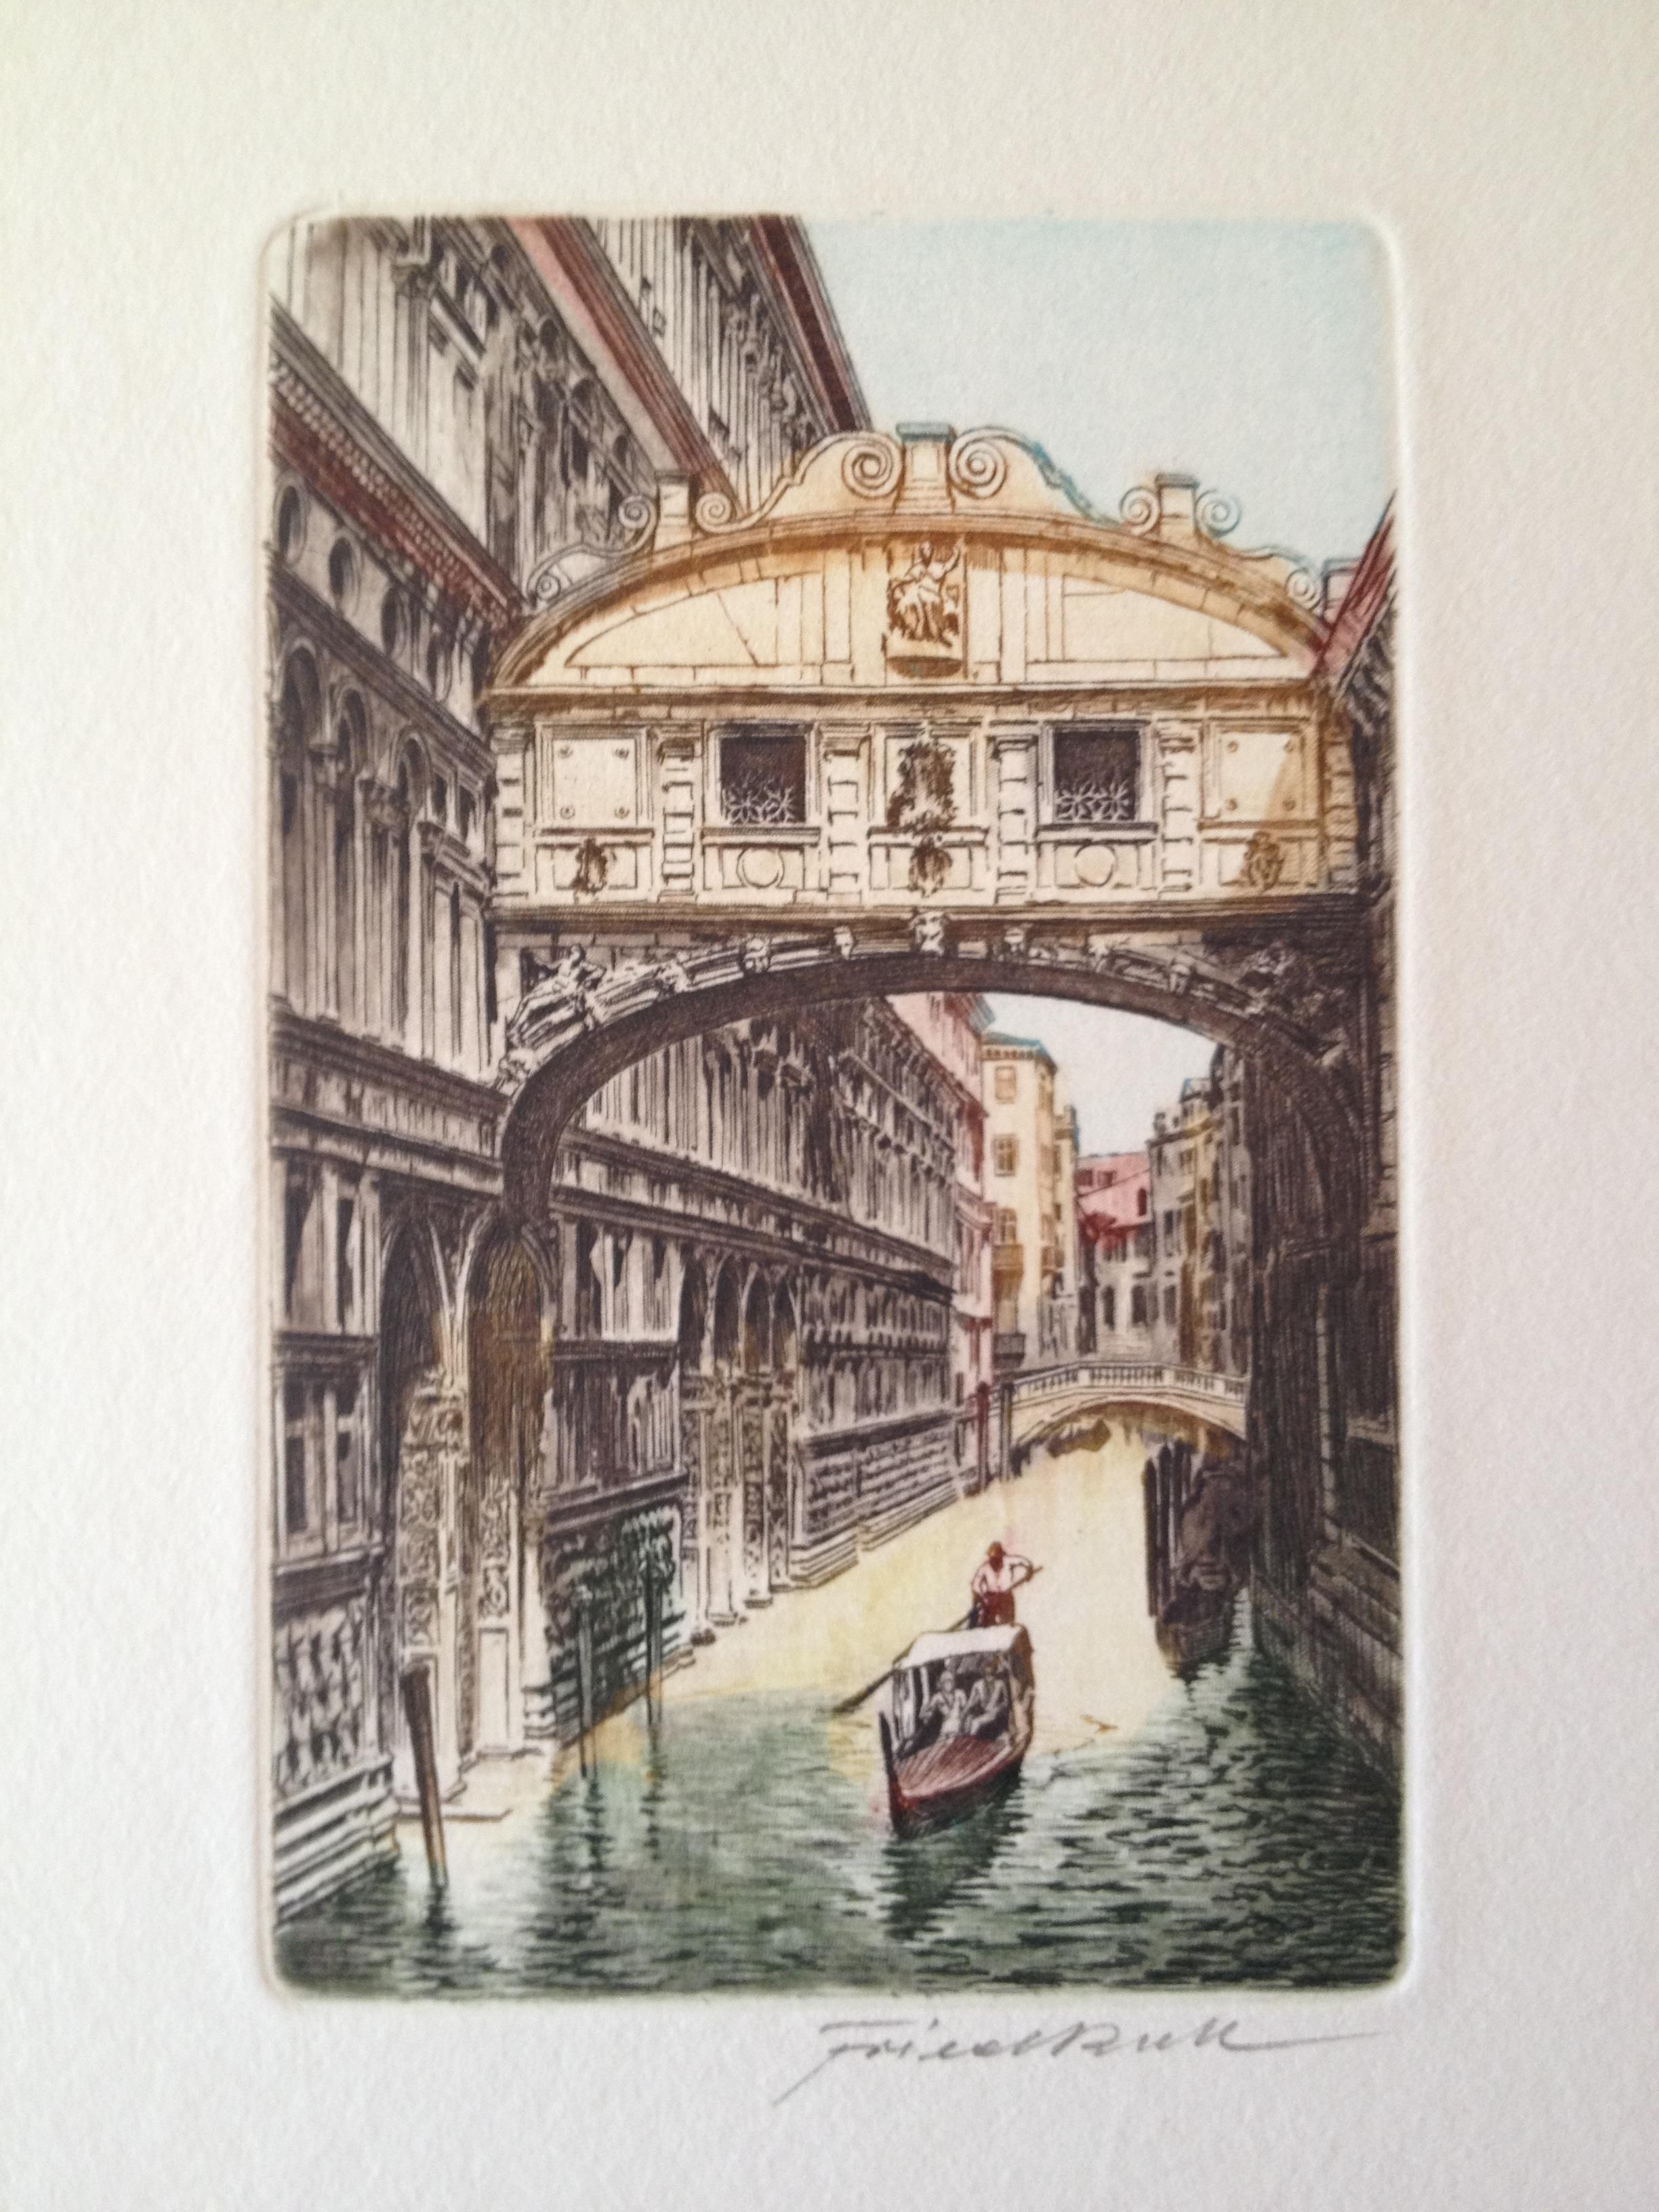 Eine der beliebtesten Ansichten in Venedig, signiert, Motiv 10 x 15,5 cm, Blatt 24 x 30 cm